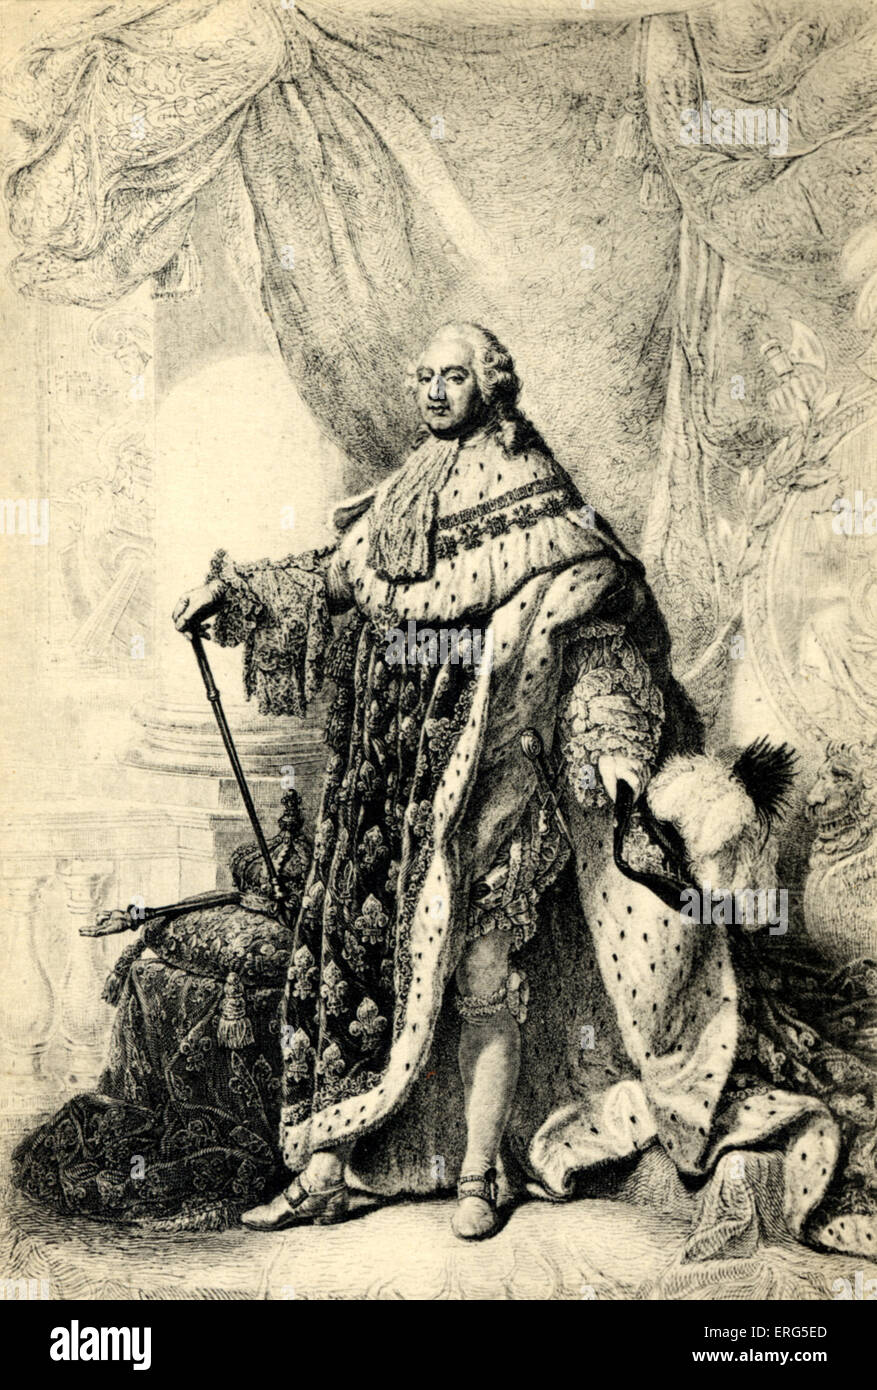 LOUIS XVI-König von Frankreich, 1754-1793. Seine Hinrichtung im Jahre 1793 markiert das Ende des Ancien Régime, nach der Revolution von 1789. Stockfoto